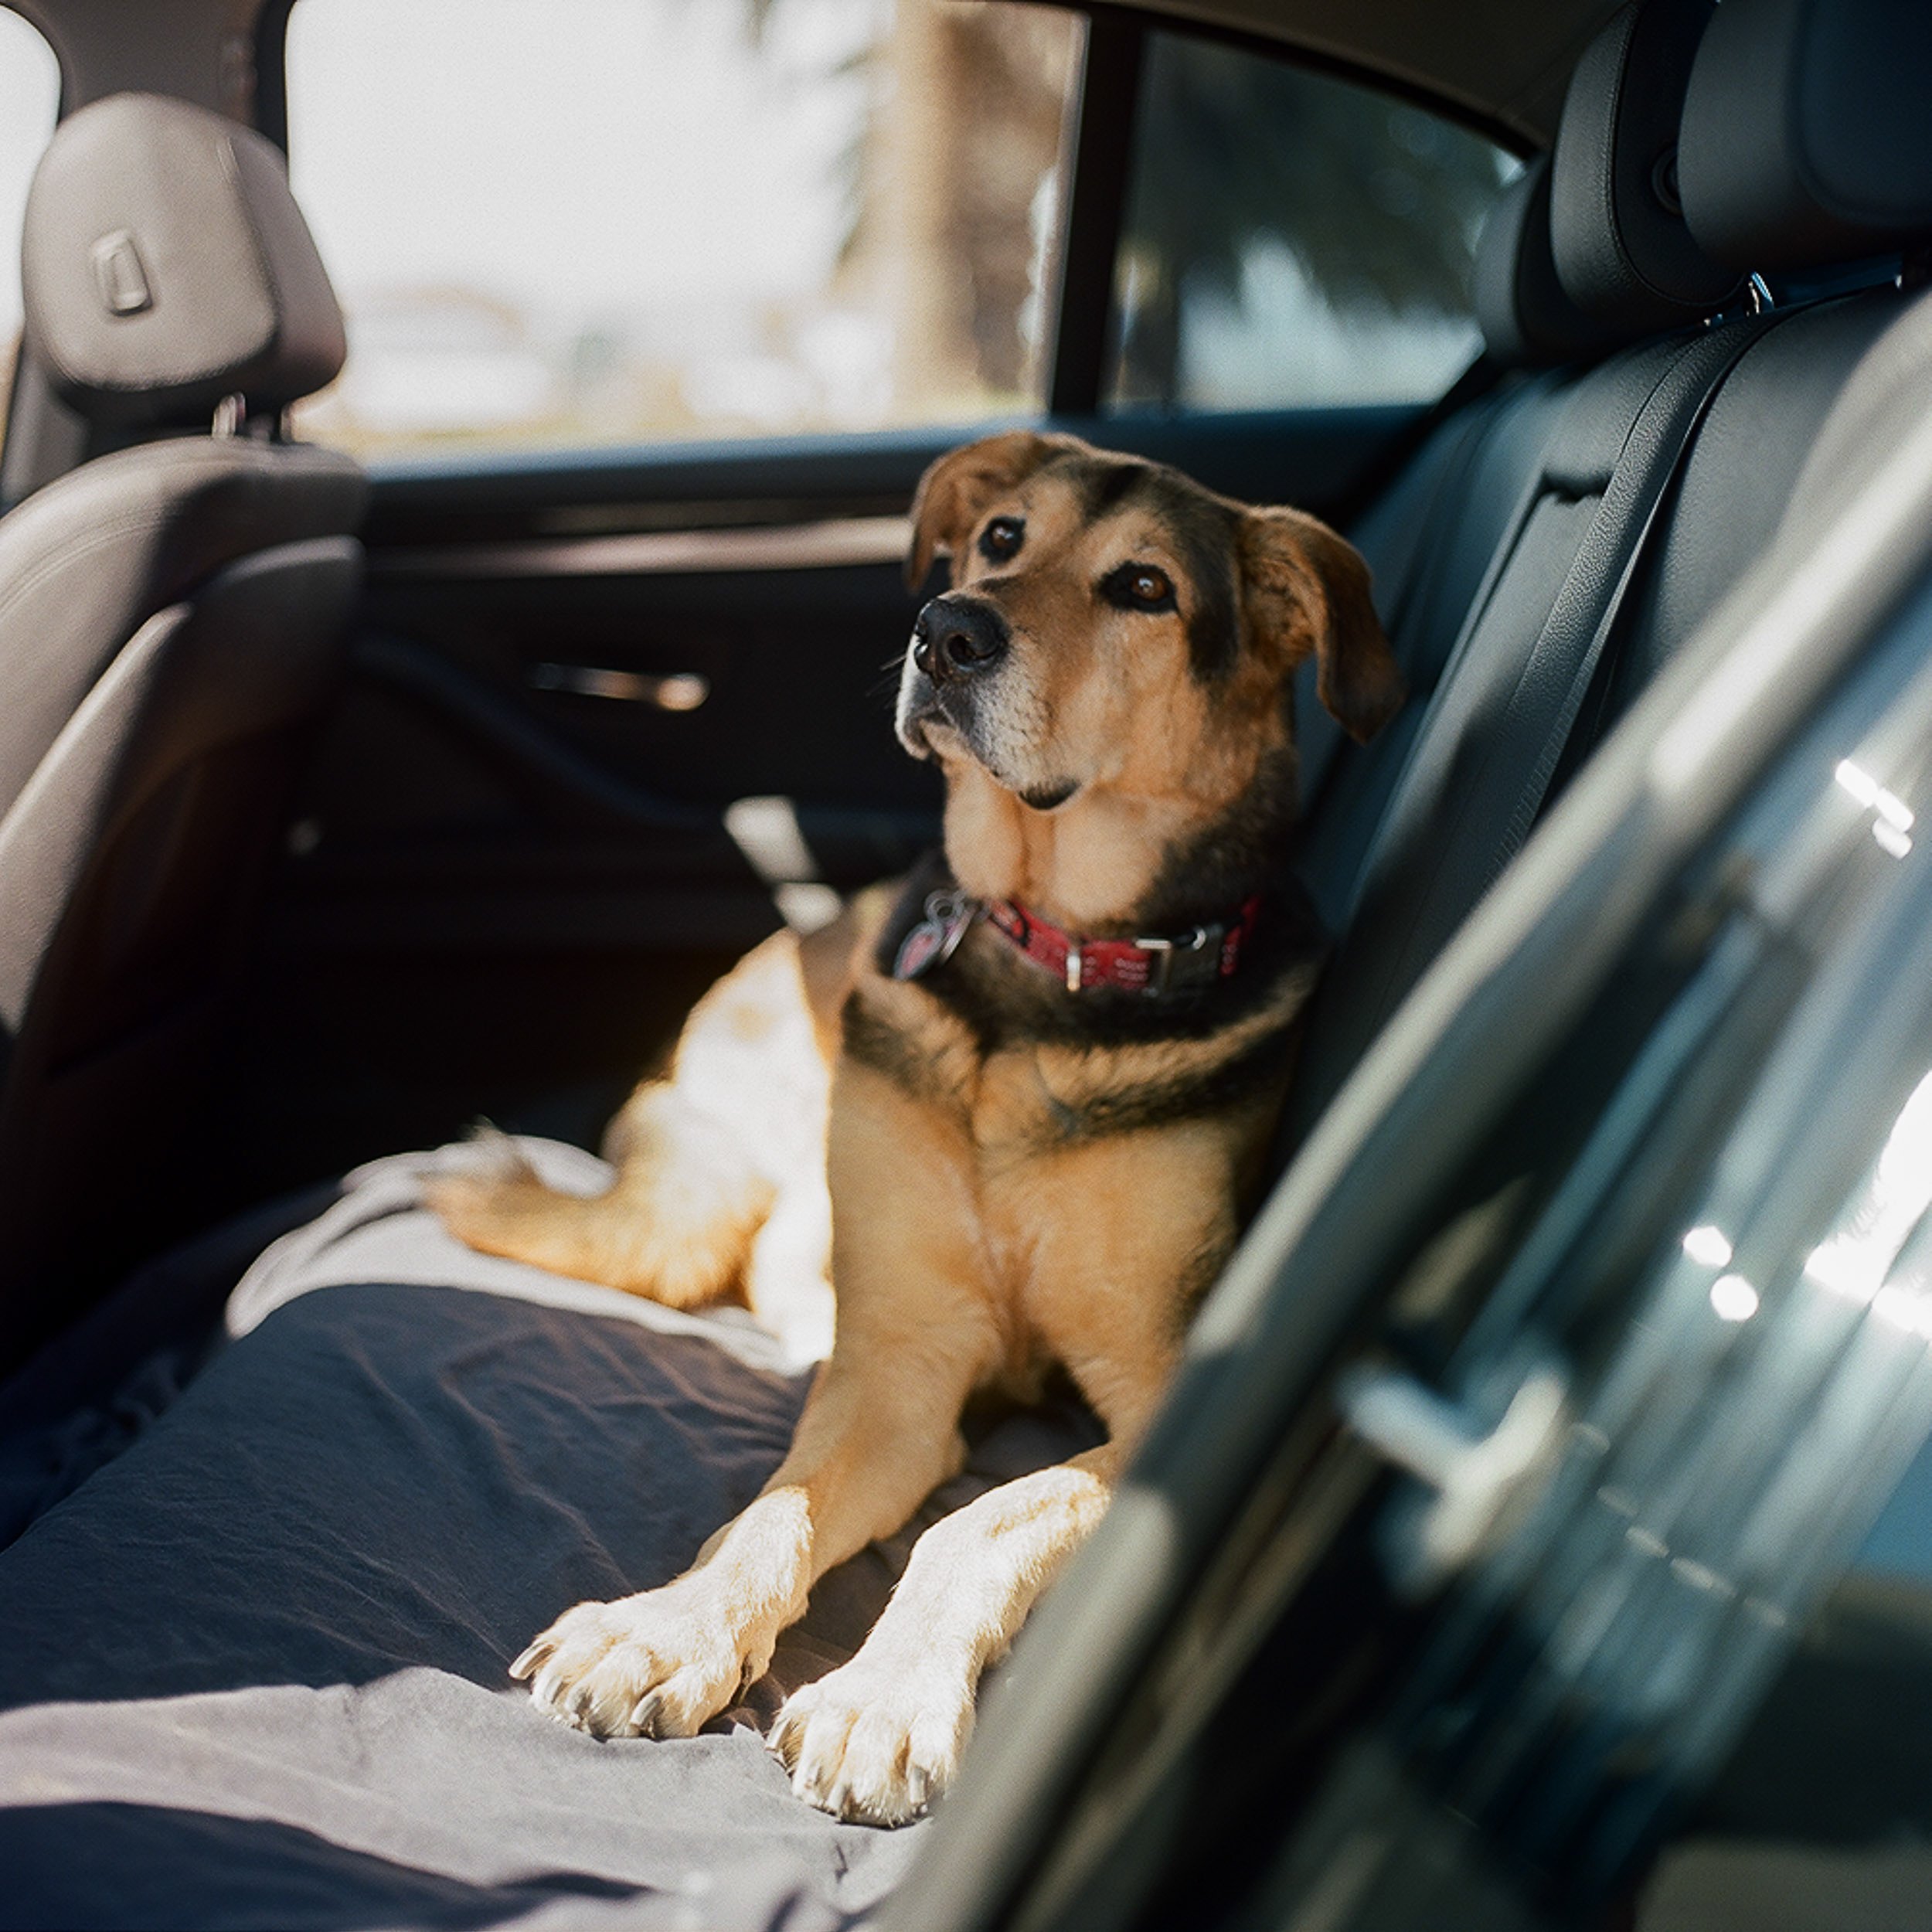   Dog Waiting in Car, 2022  